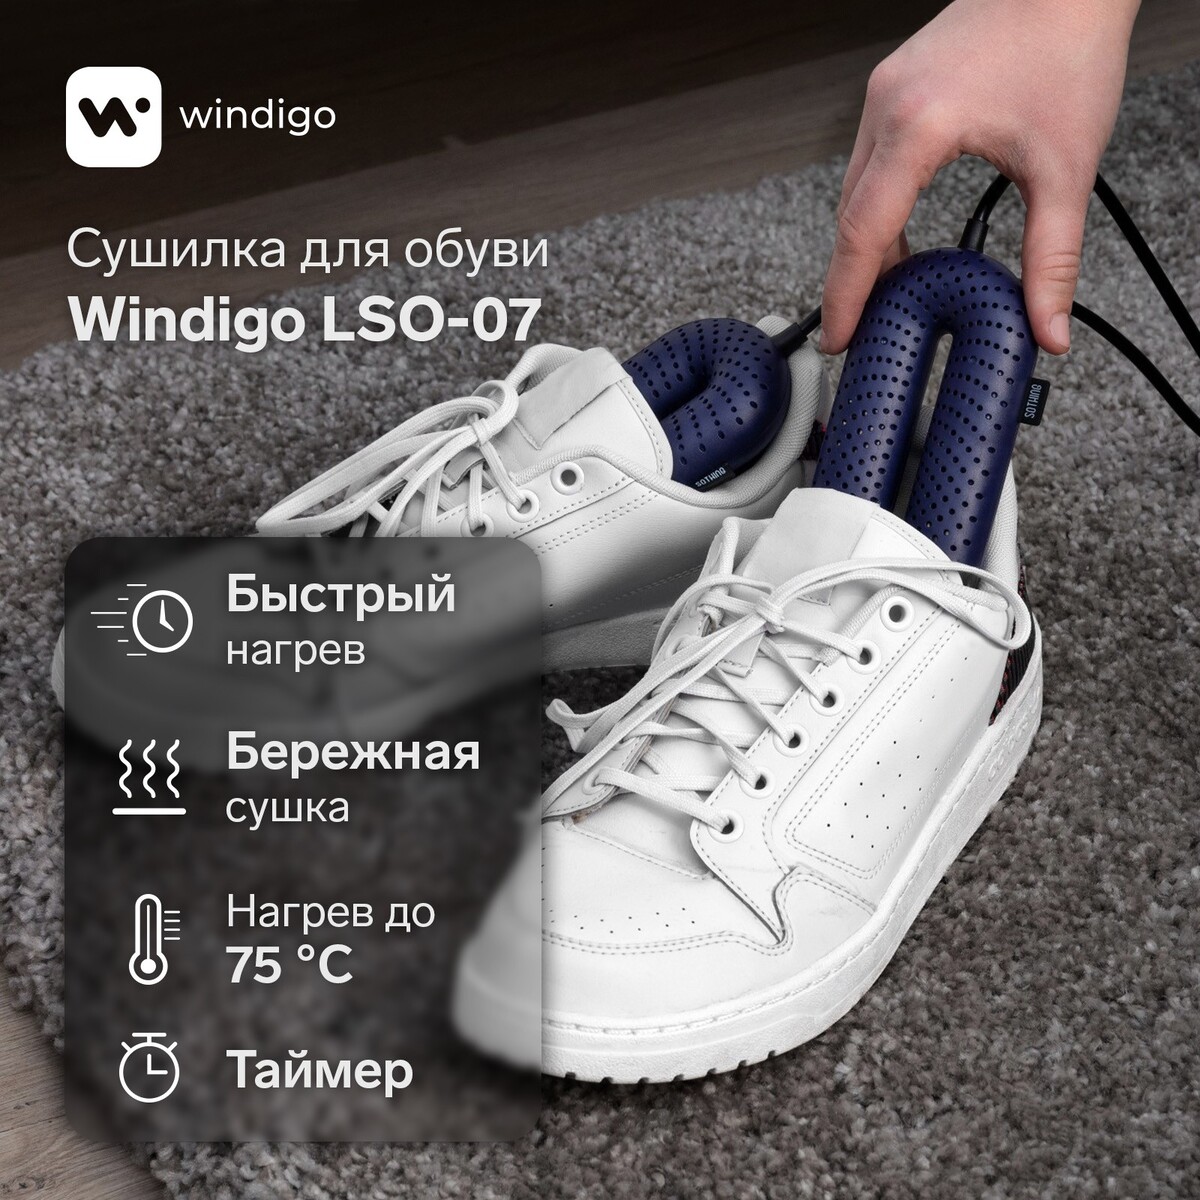 Сушилка для обуви windigo lso-07, 17 см, 20 вт, индикатор, таймер 3/6/9 часов, синяя сушилка для обуви эсо 9 220 9 вт 14 см синяя